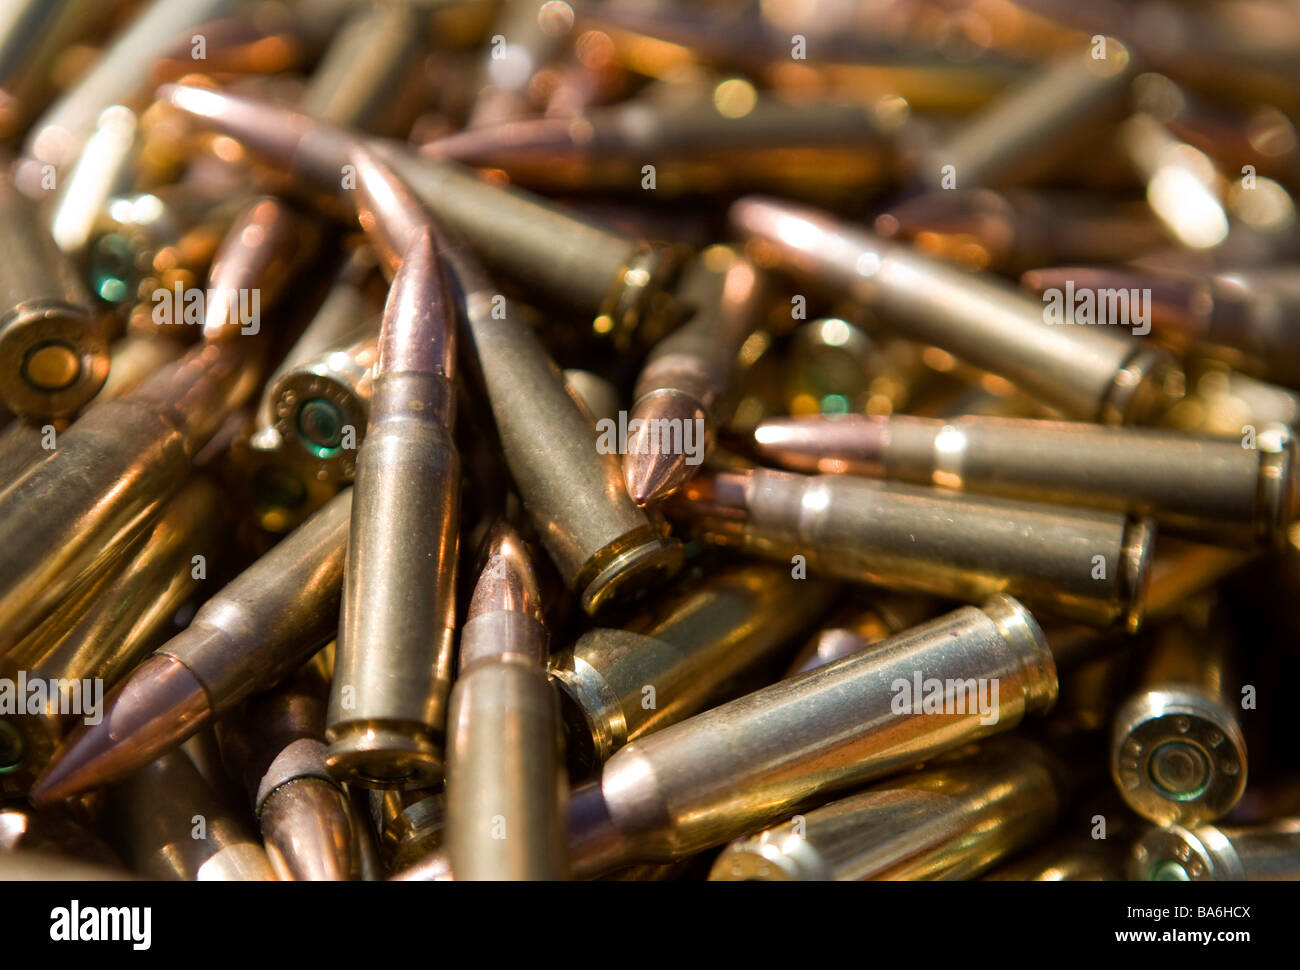 12 aprile 2009 Frederick Maryland di piccolo calibro munizioni fucile una penuria di munizioni ha colpito gli Stati Uniti Foto Stock